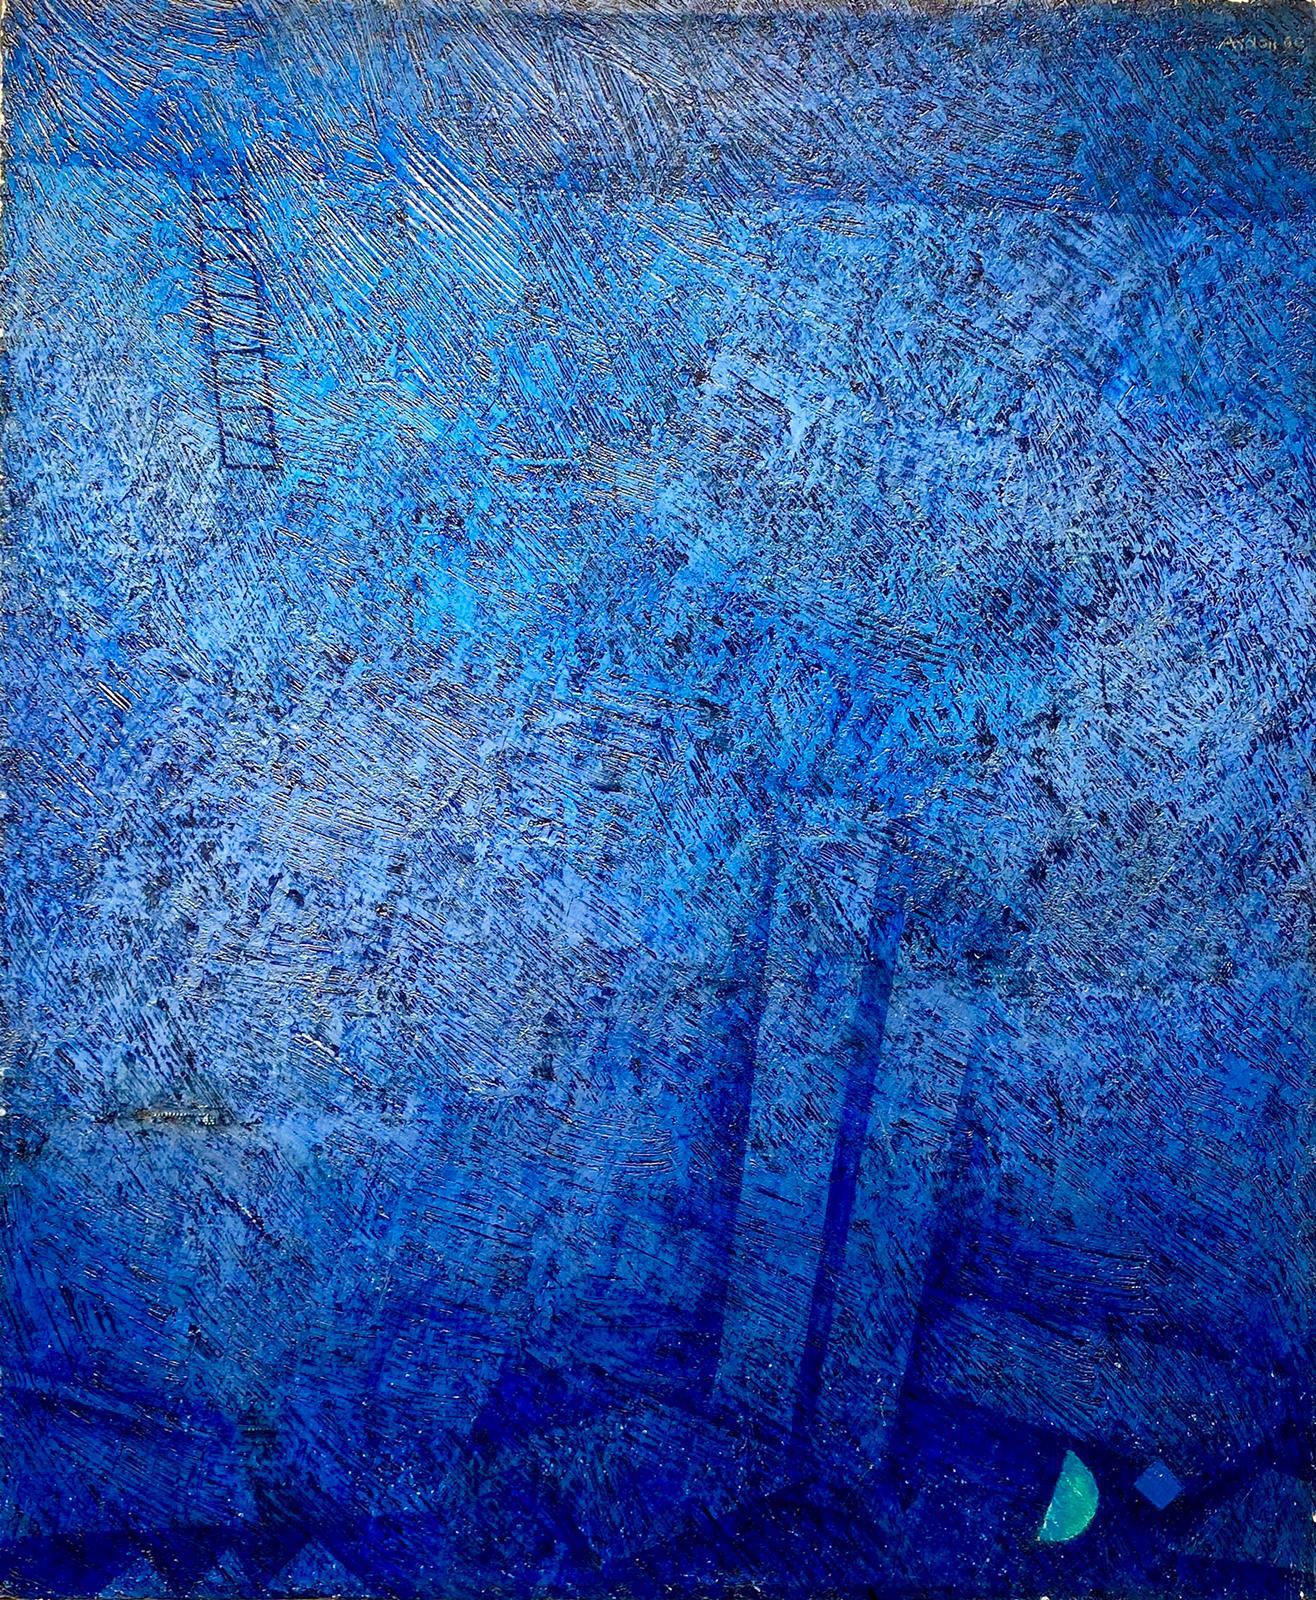  Sunken Caesarea - Blue Abstract Painting by Mordechai Ardon